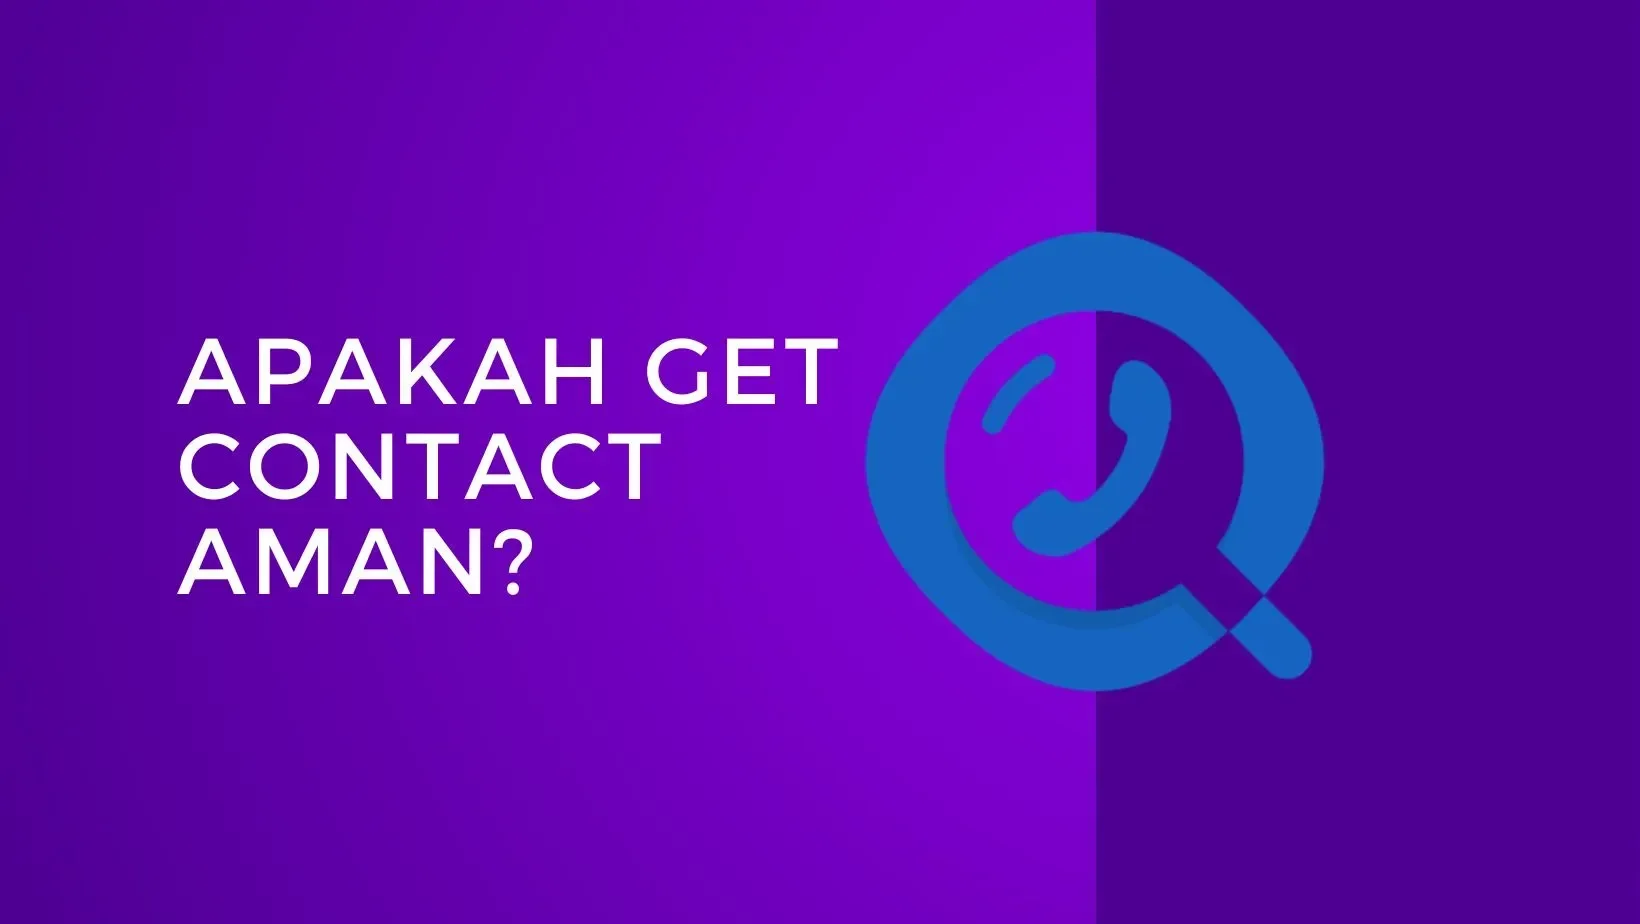 Apakah Get Contact Aman? Temukan Jawabannya di Sini